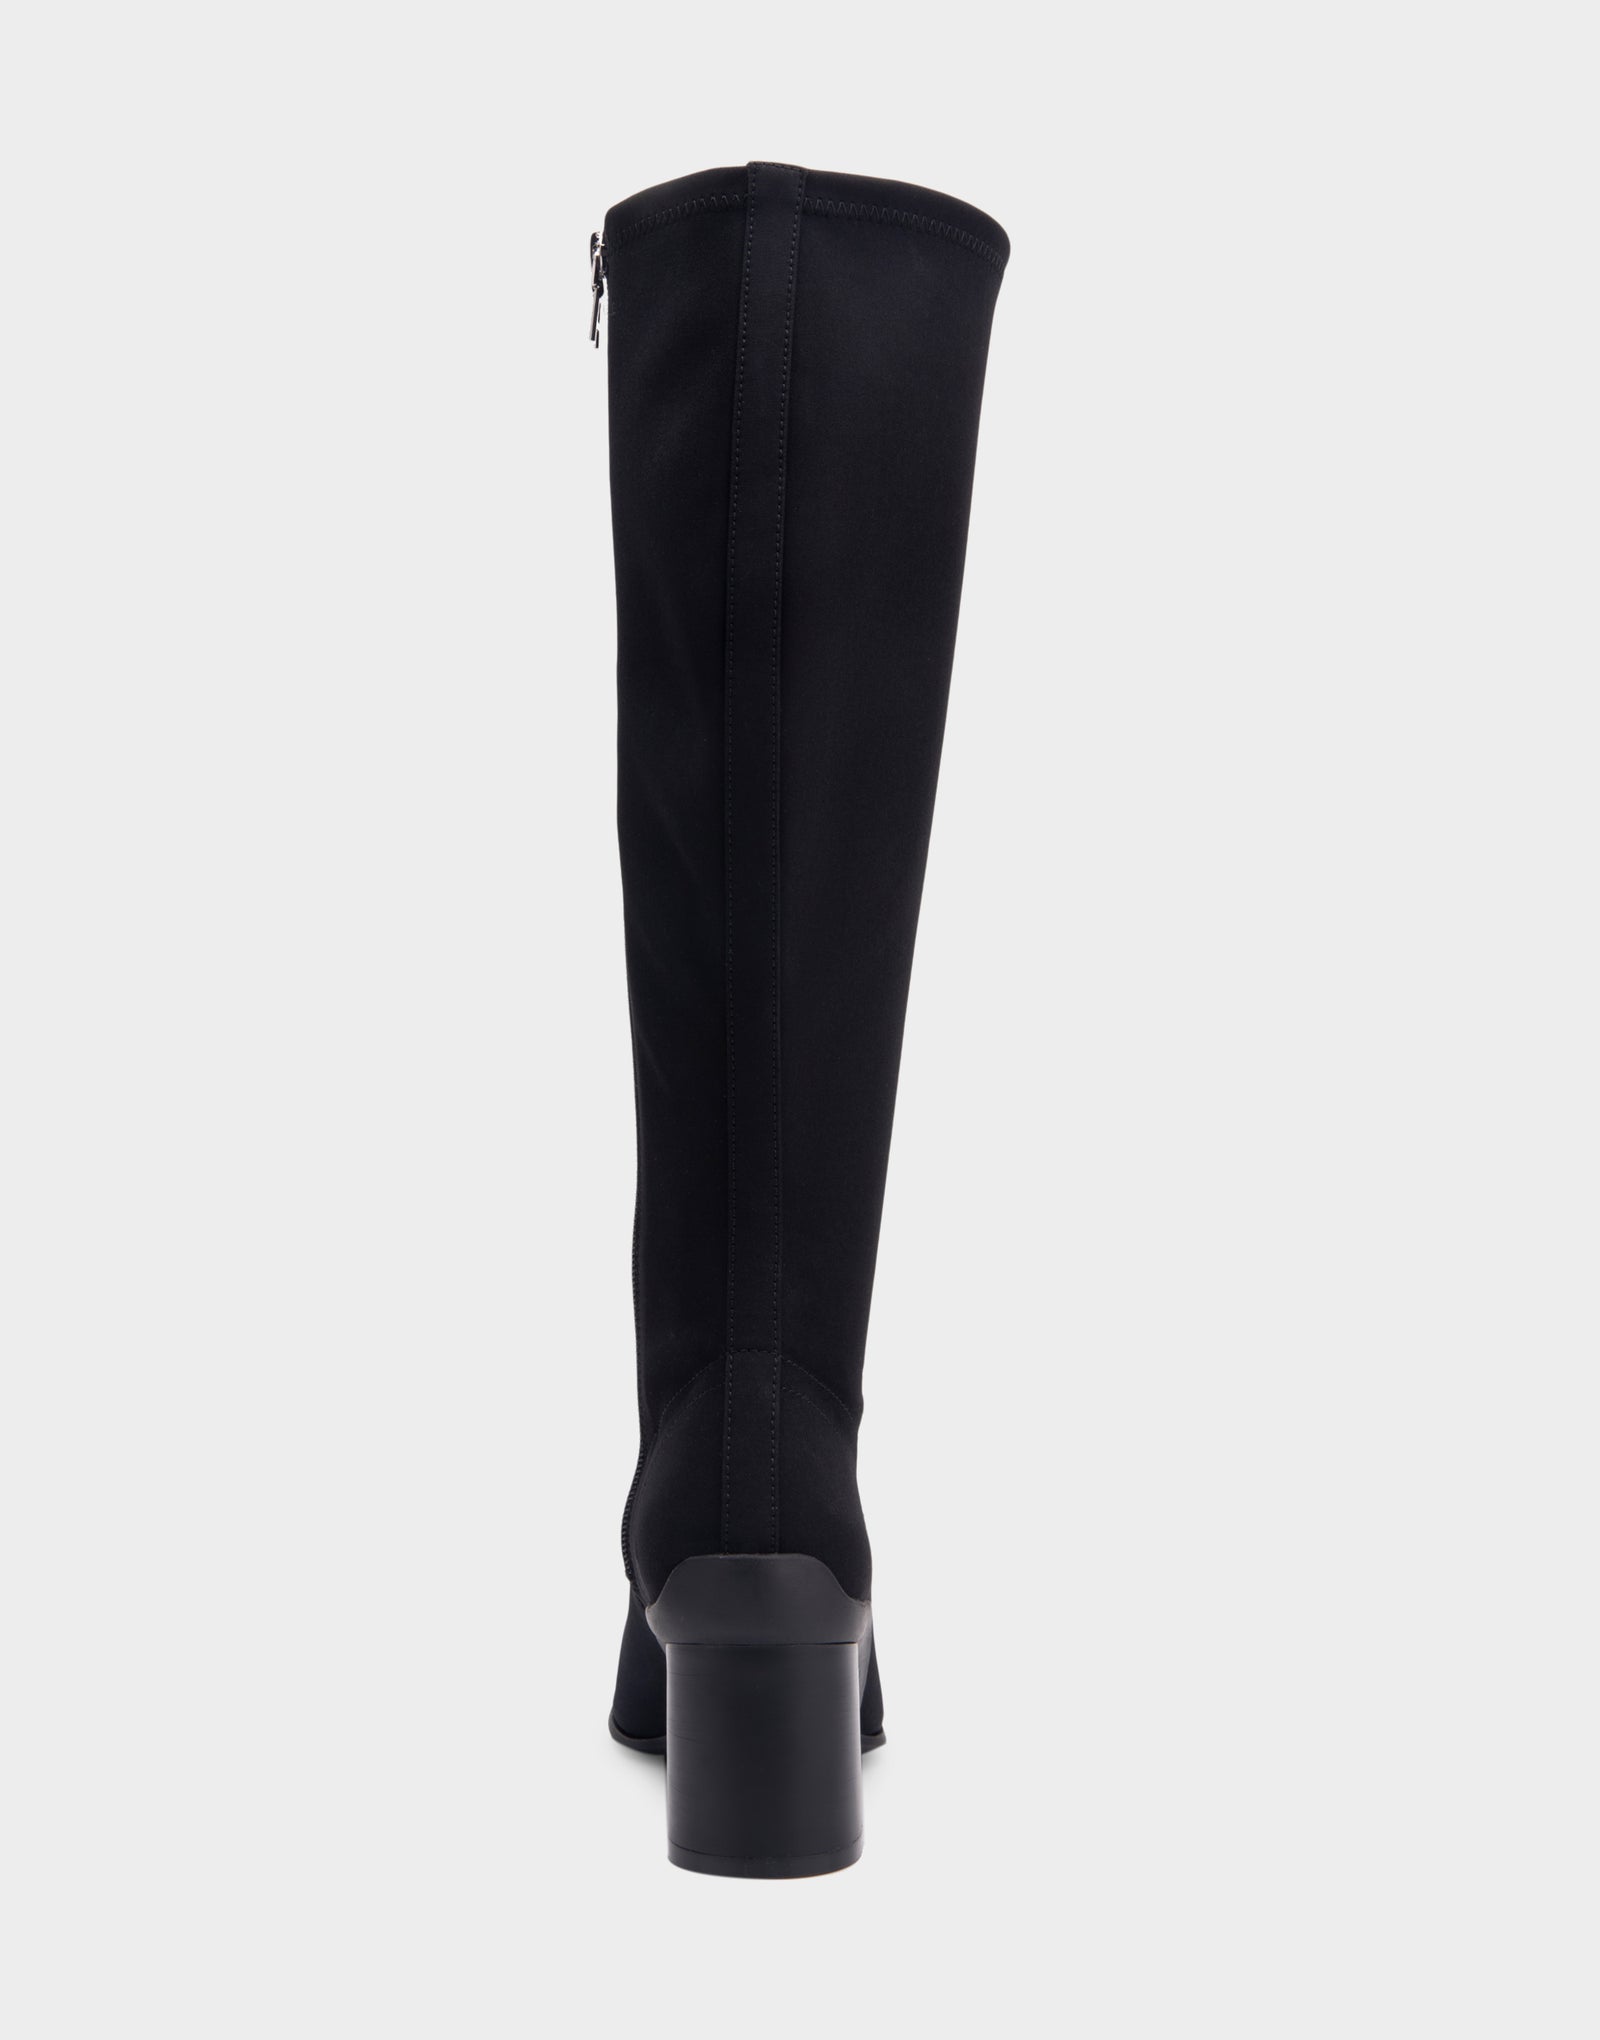 Women's Sculpted Heel Tall Shaft Boot in Black